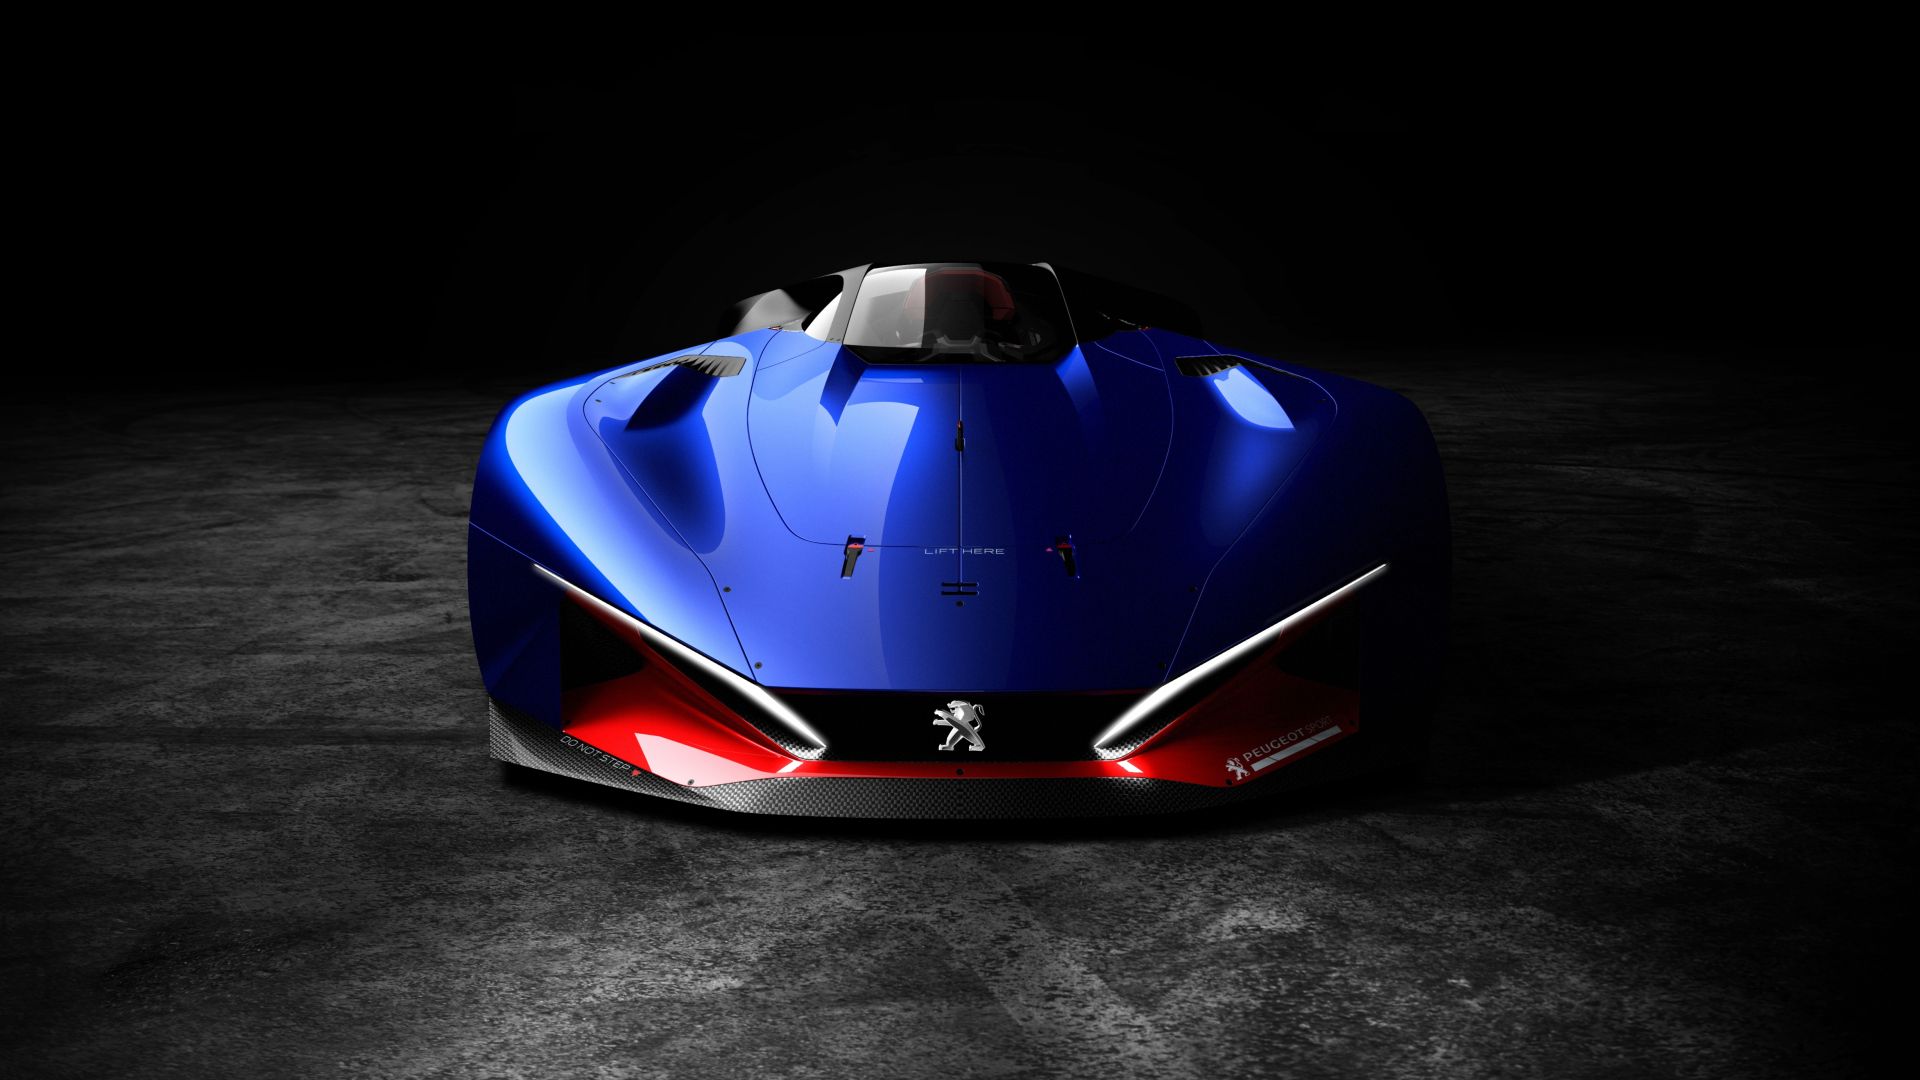 ПЕЖО л500 Р Гибрид, суперкар, супермобиль, синий, Peugeot L500 R HYbrid, supercar, blue (horizontal)